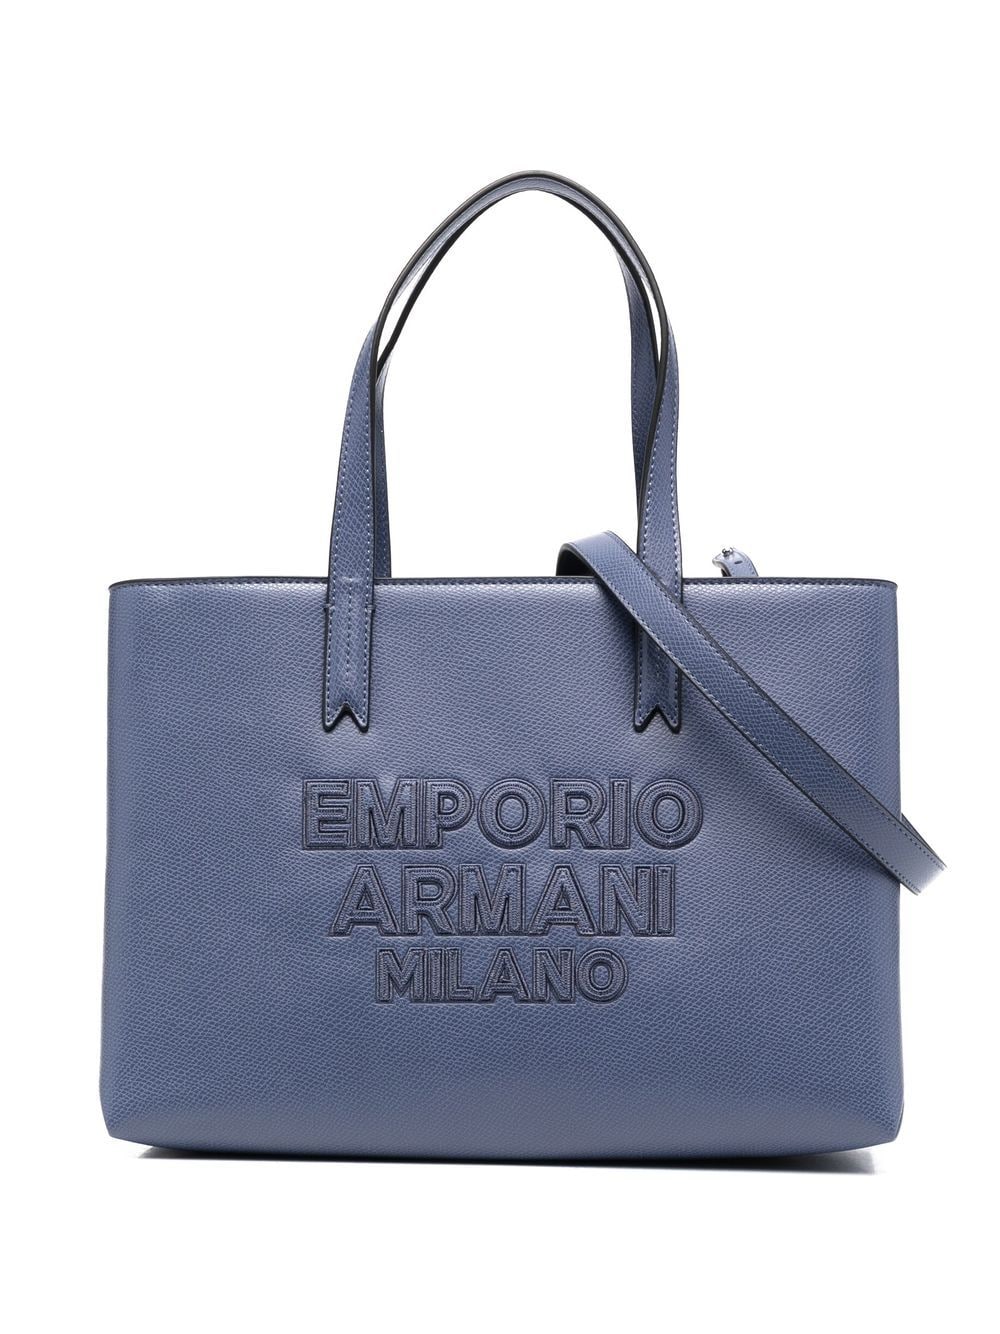 Emporio Armani embroidered logo tote bag - Blue von Emporio Armani